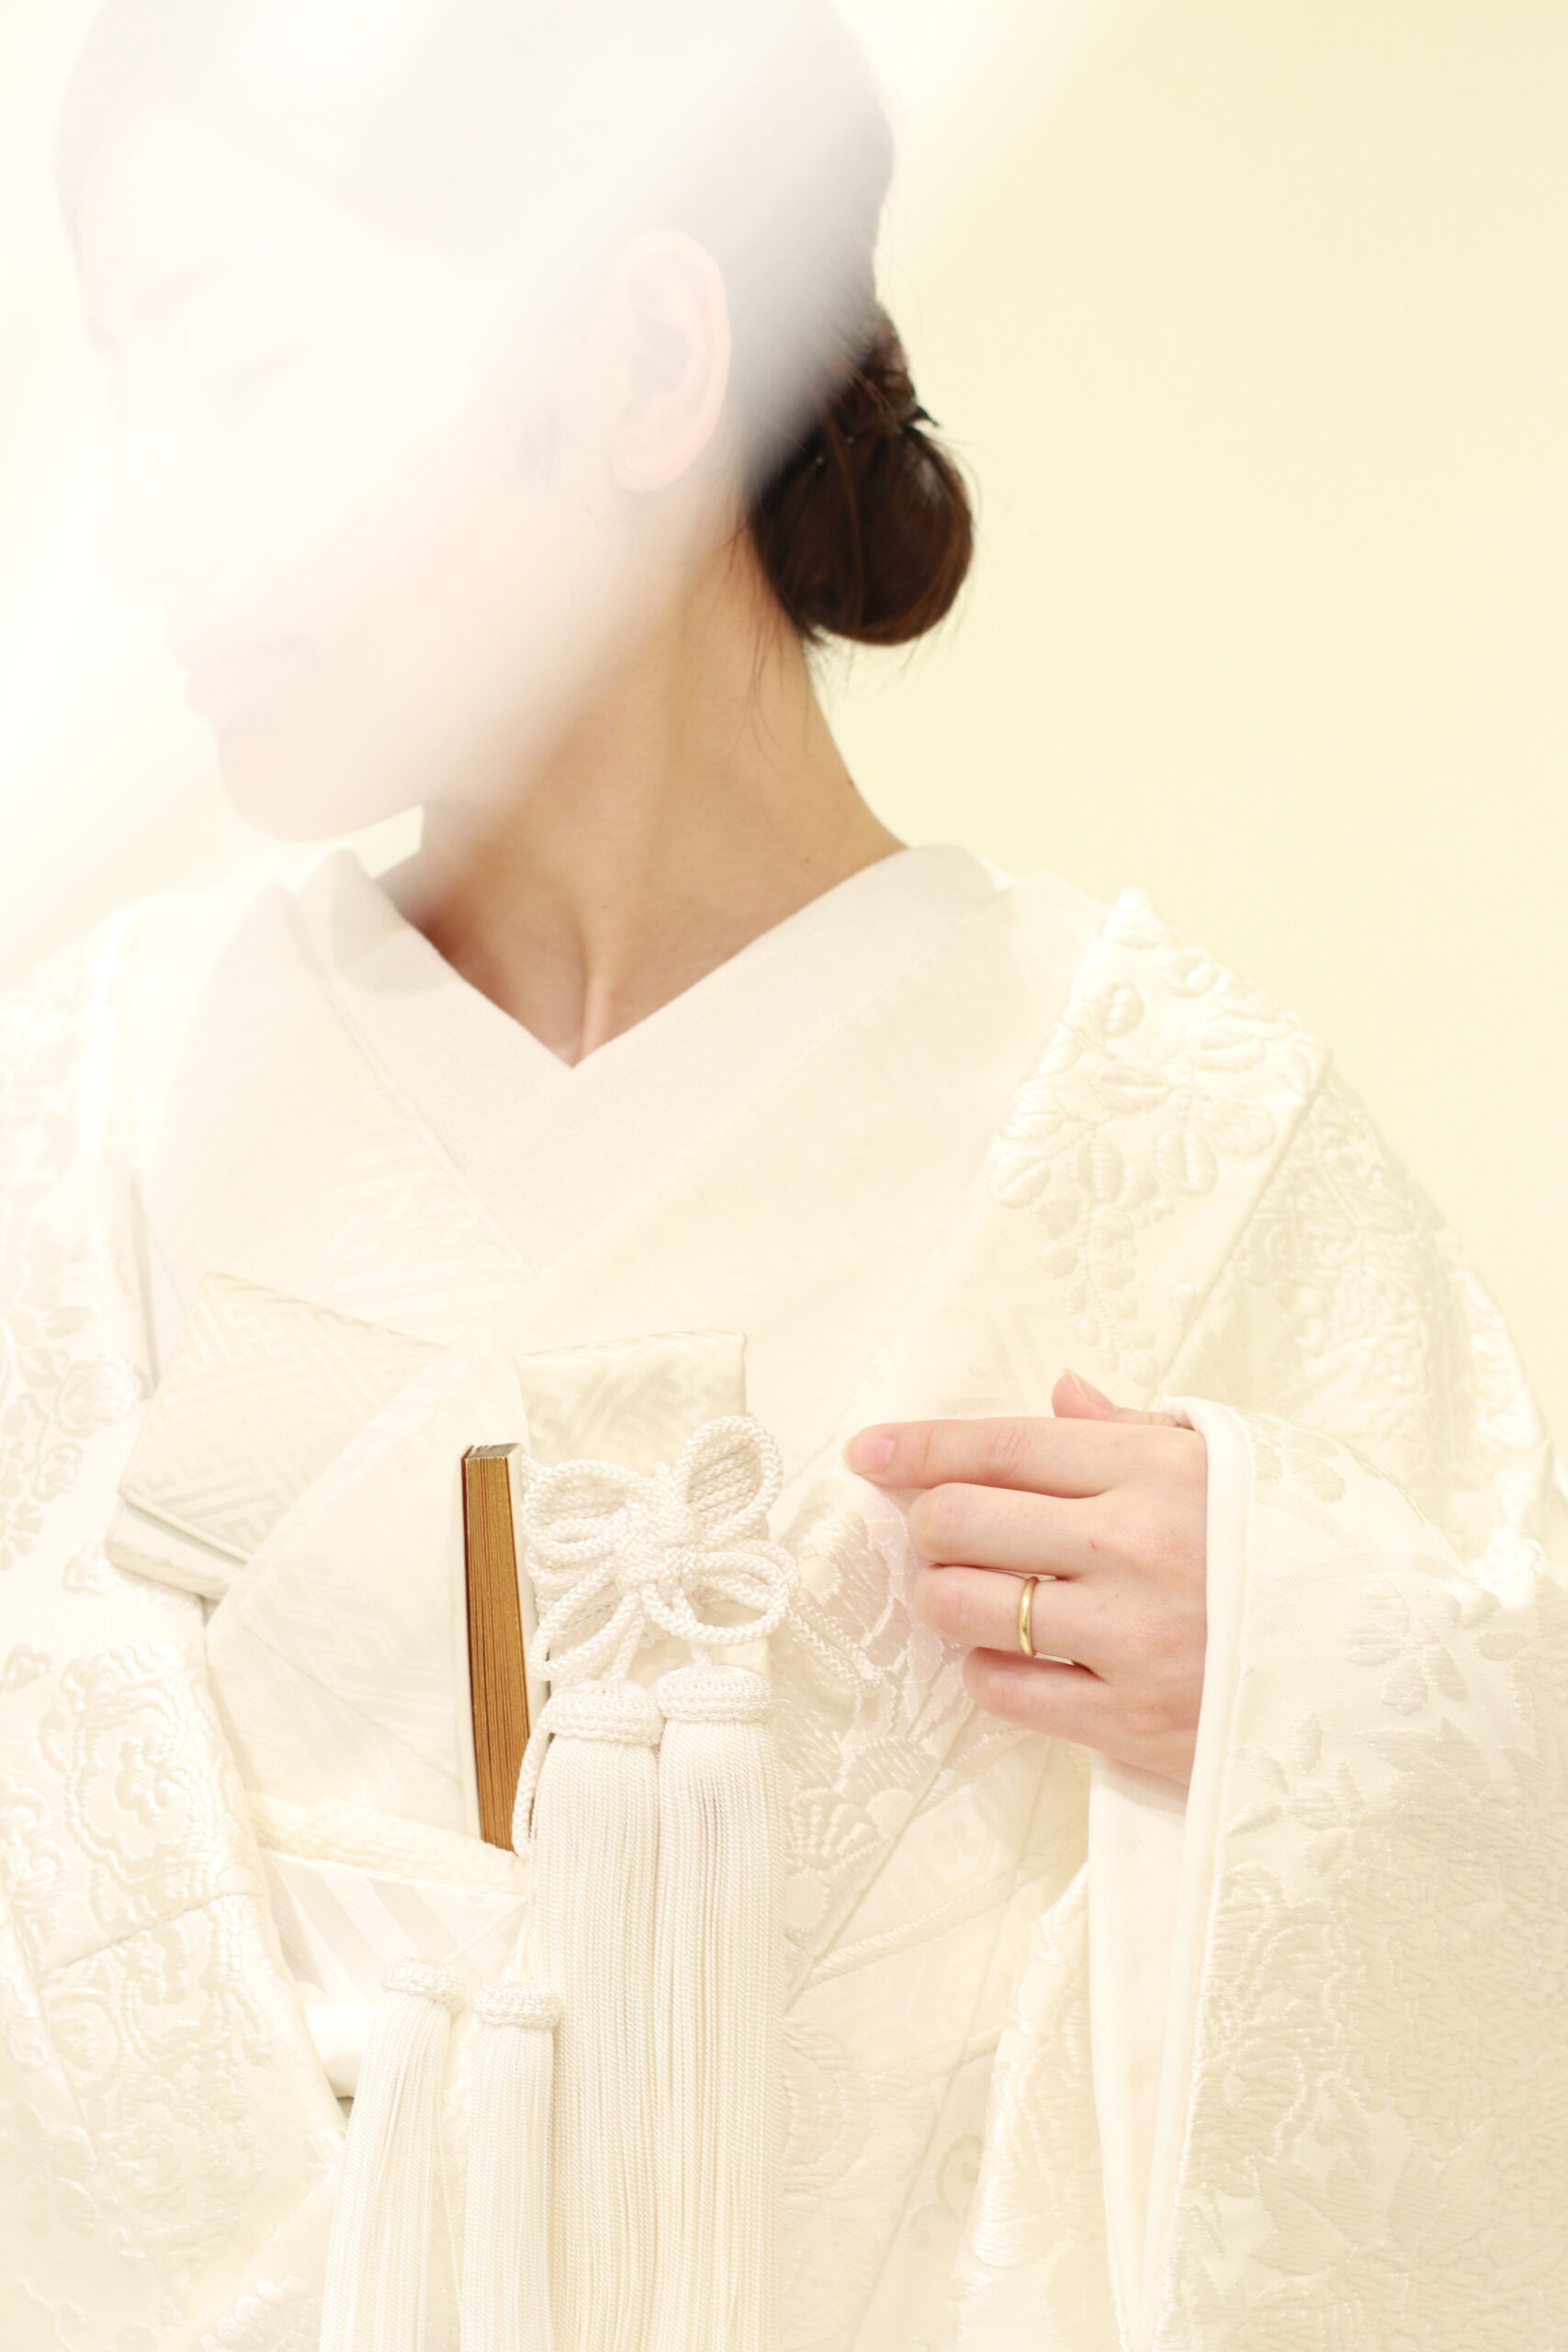 東京・表参道に店を構えるトリートドレッシング　アディション店では、日本の花嫁にぜひご紹介したい白無垢を数多く取り扱っています。古くから受け継がれる花嫁の婚礼衣装、白無垢にぴったりのお式のスタイルも一緒にご紹介いたします。